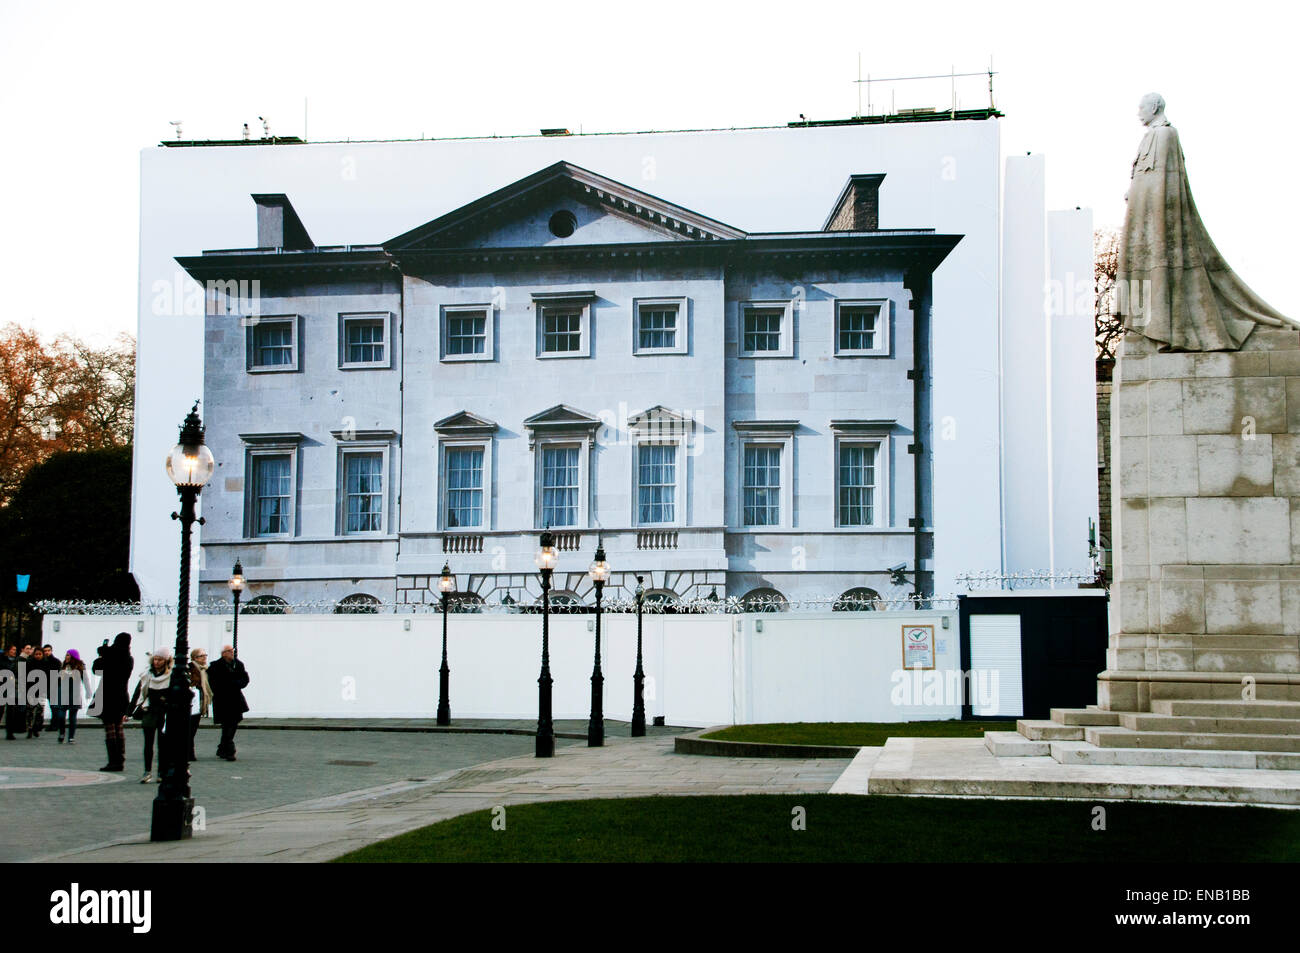 Edificio di fronte al parlamento in costruzione con i ponteggi schermo con immagine fotografica dell'edificio ristrutturato Foto Stock